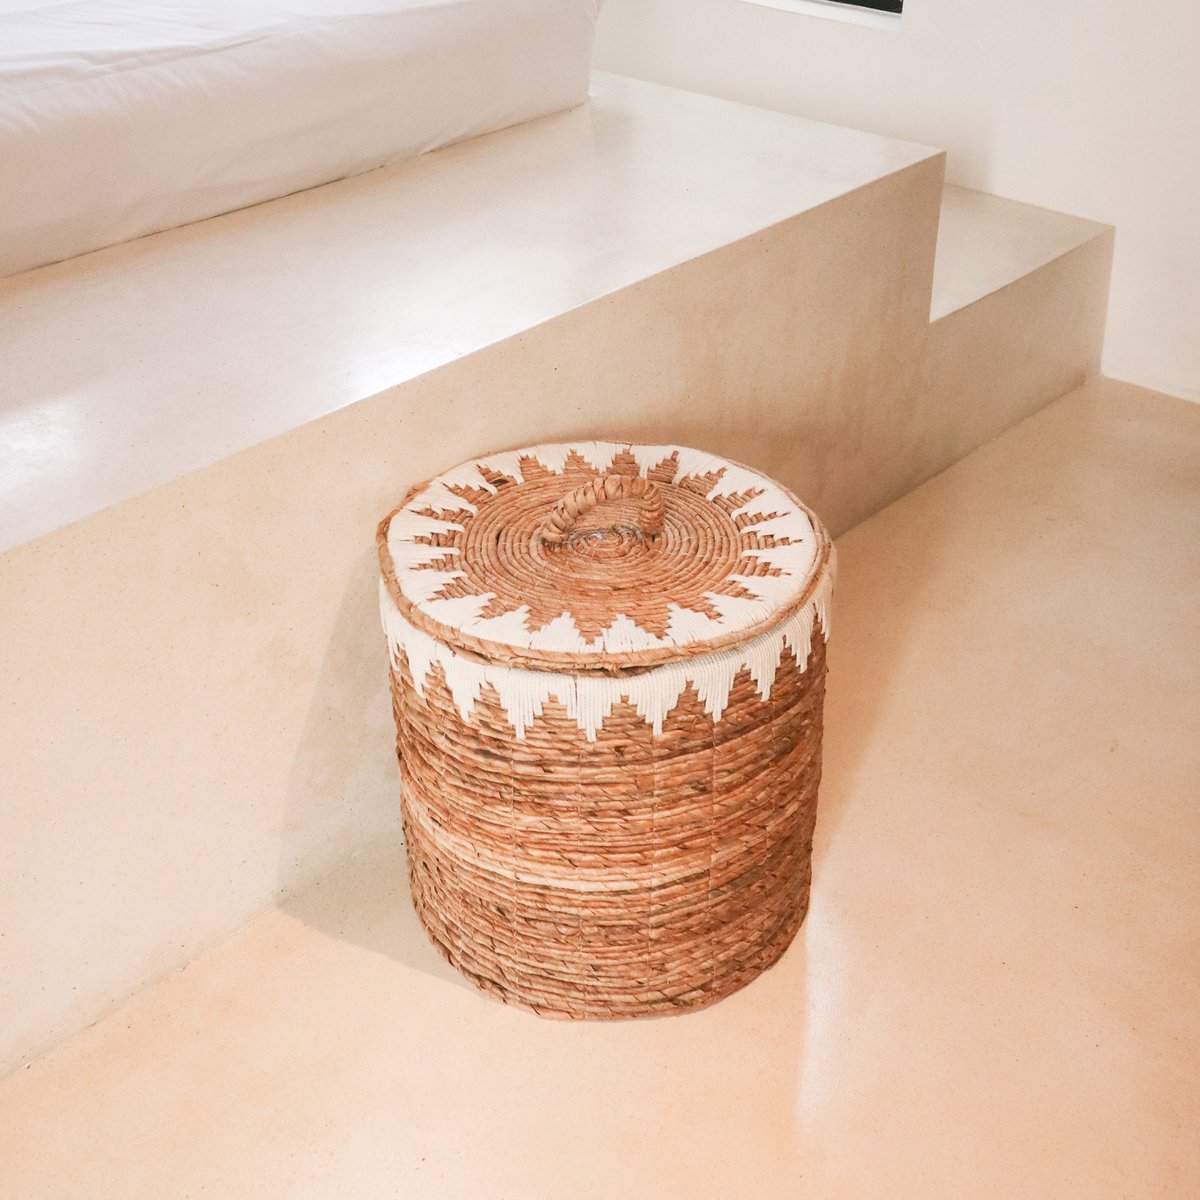 Laundry basket with lid made of banana fiber EMPAT - Large laundry basket with white cotton macrame (2 sizes)